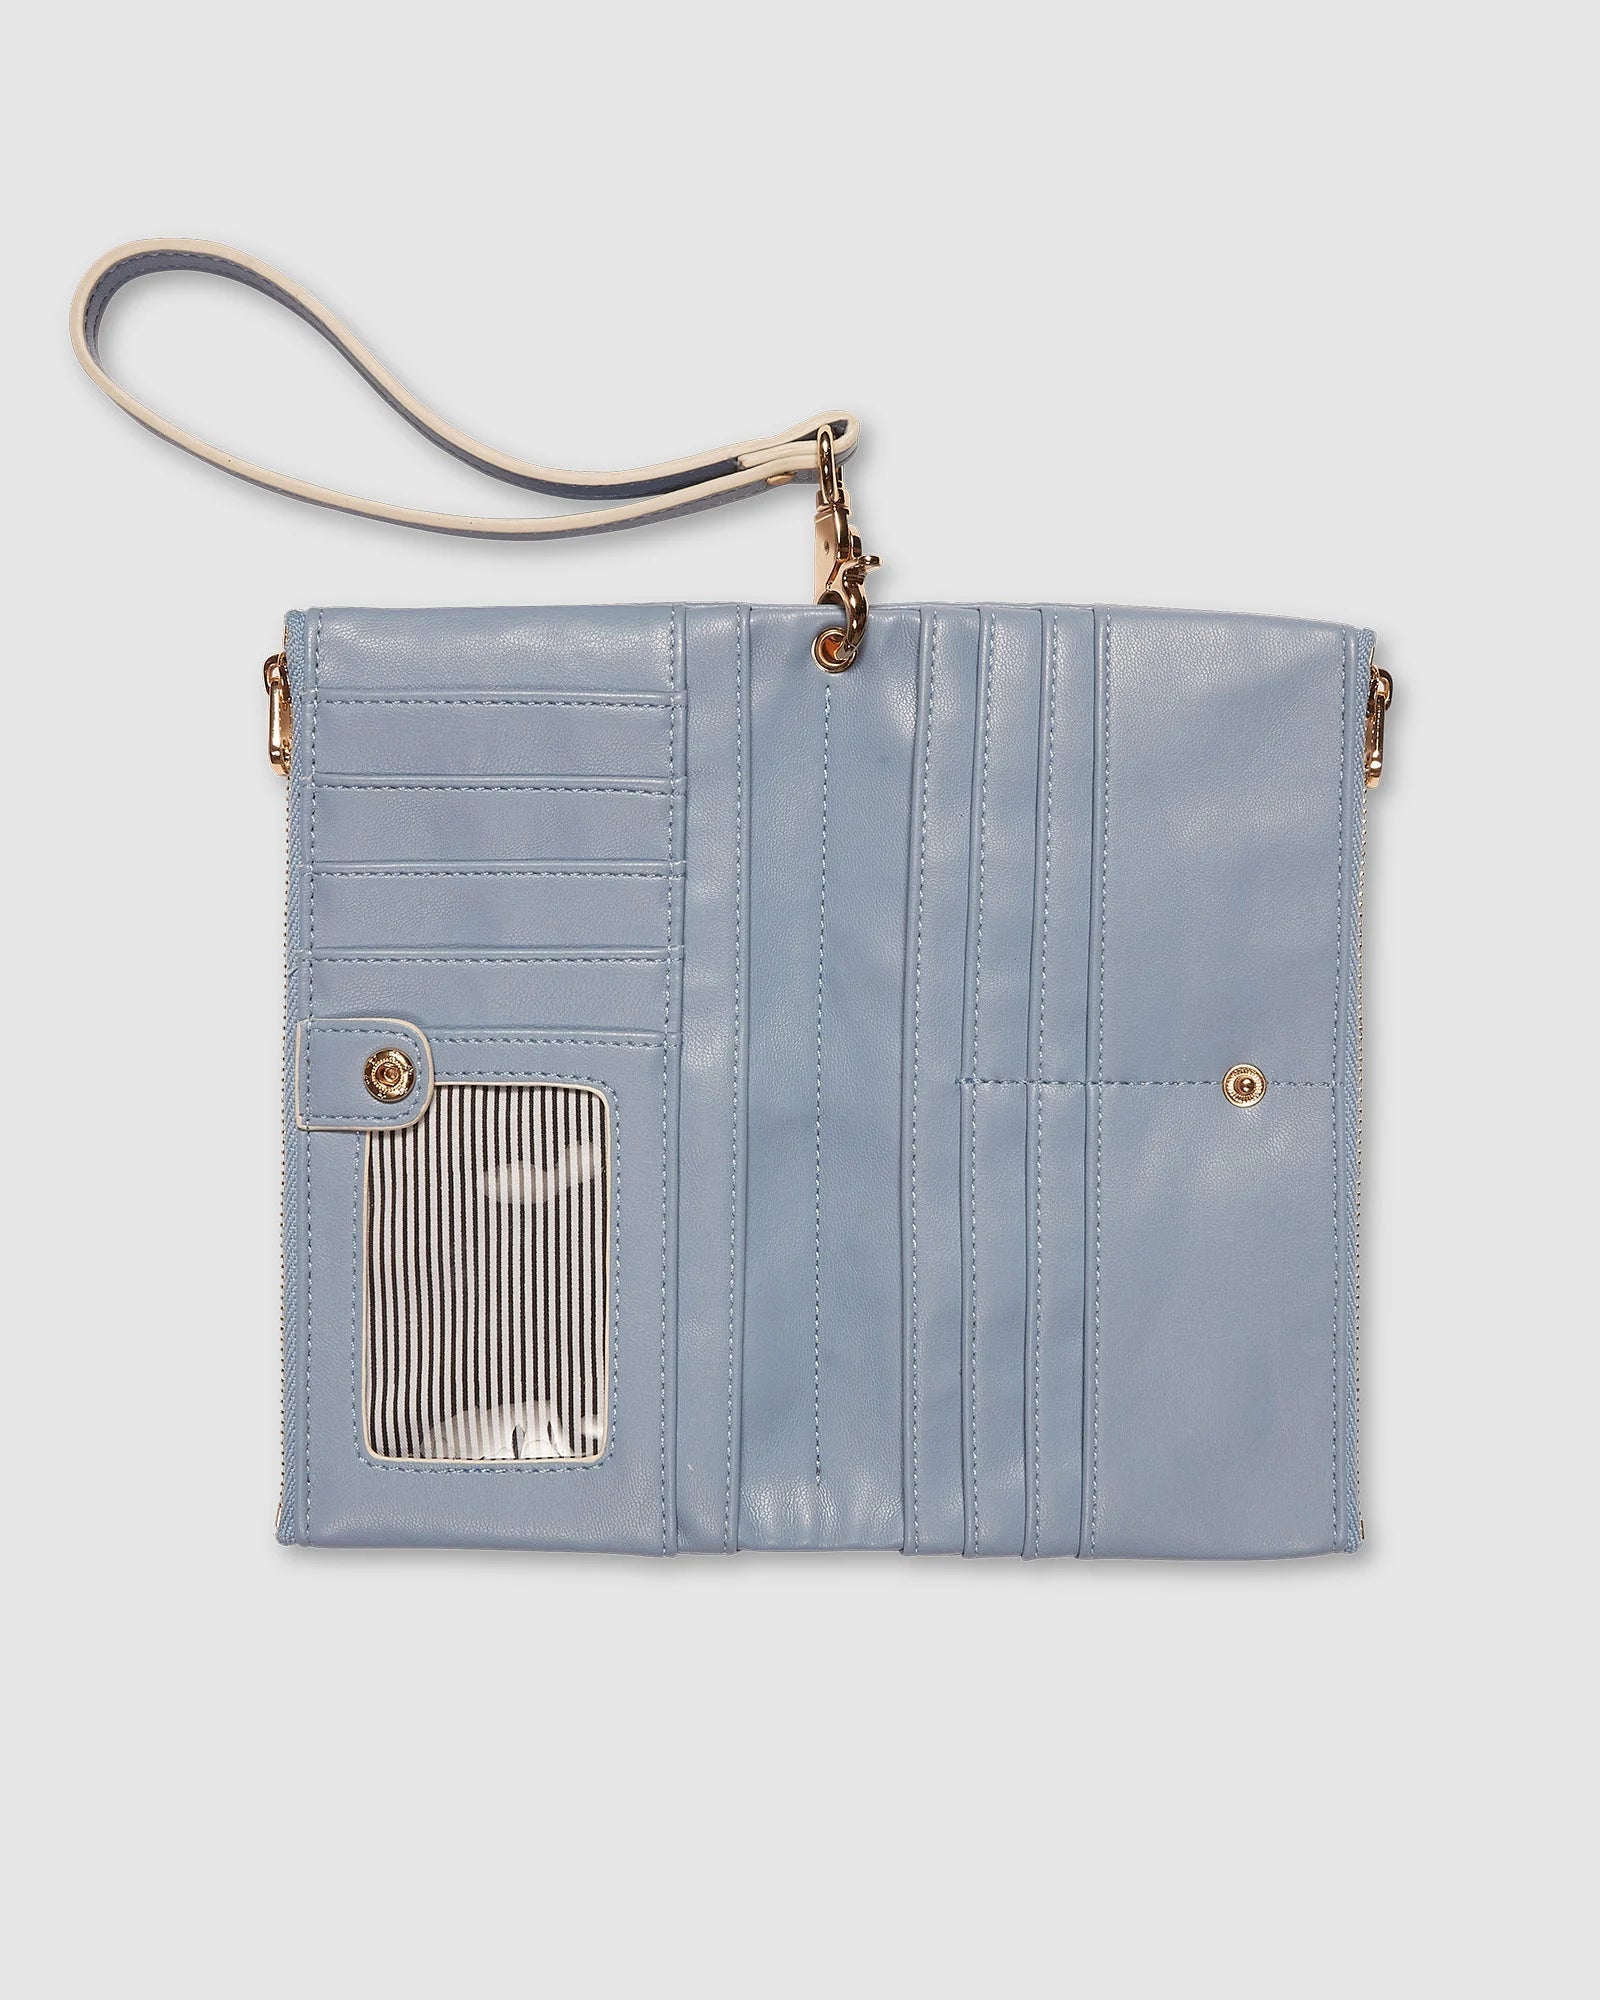 Louenhide Sailor Wallet - Cloud Blue Accessories - Other Accessories - Handbags & Wallets by Louenhide | Grace the Boutique